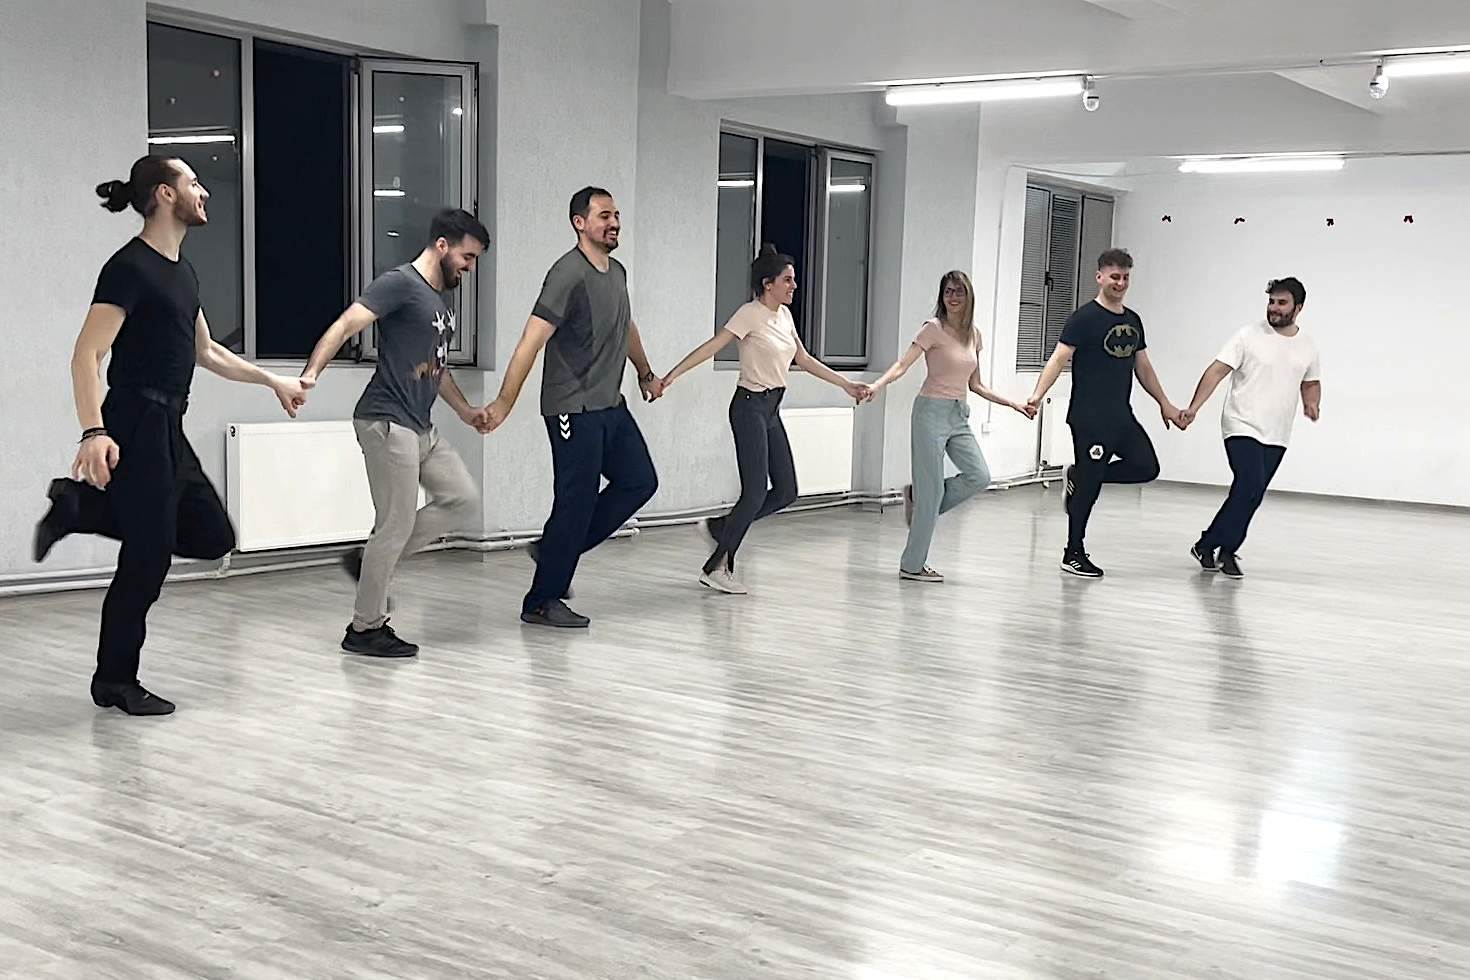 o imagine din sala bloomart academy cu grupa de la dans de societate adulti in timp ce danseaza un dans de grup, tinandu-se de mana in sir.